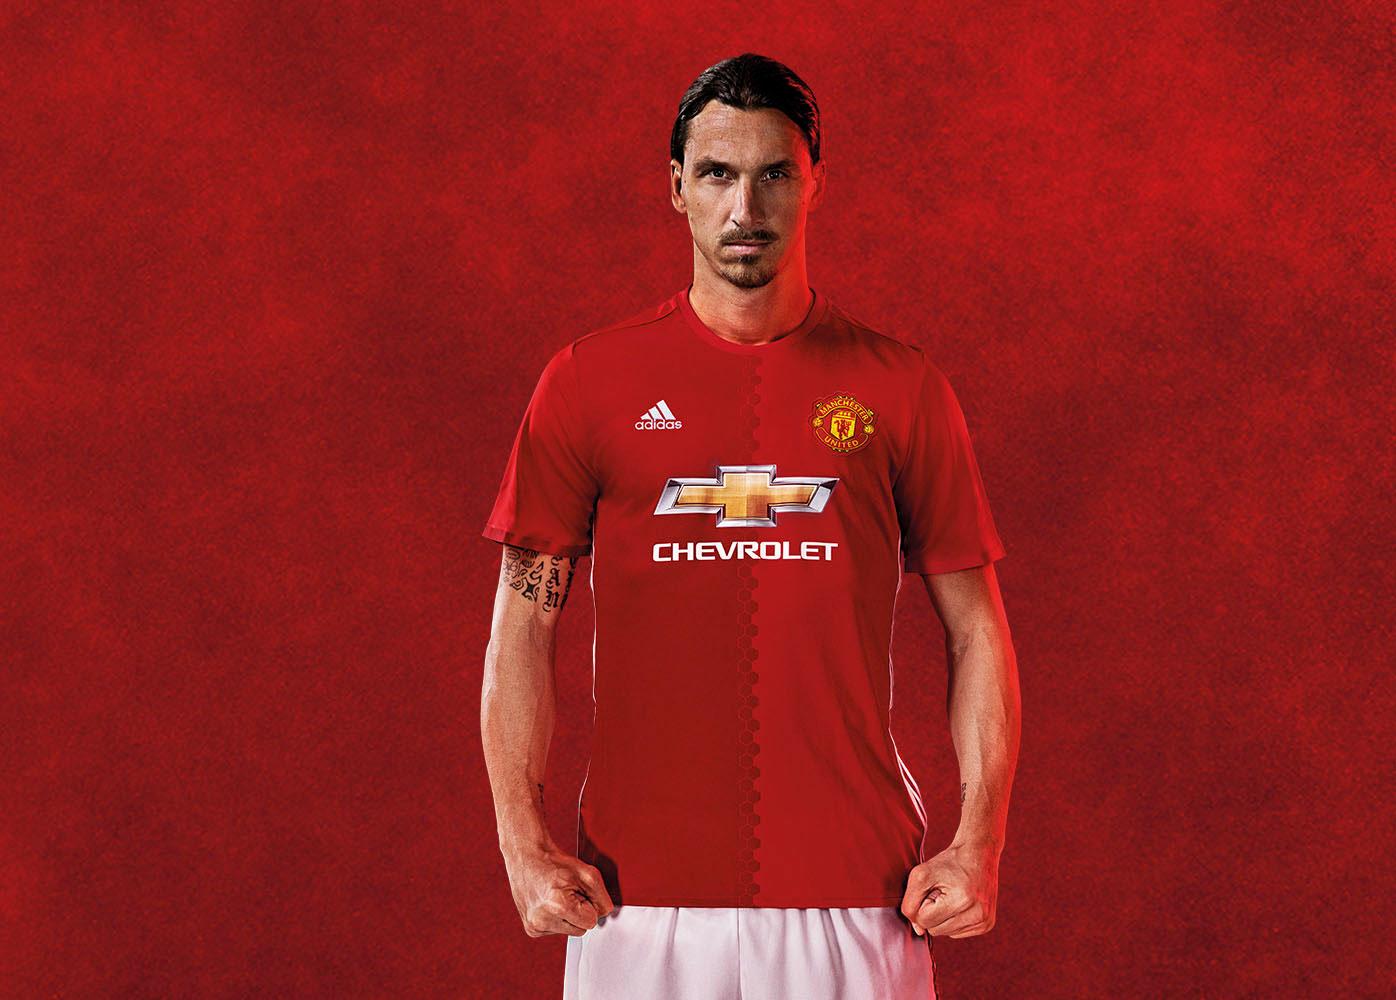 Kommer vi få se Zlatan Ibrahimovic i den här tröjan på lördag?